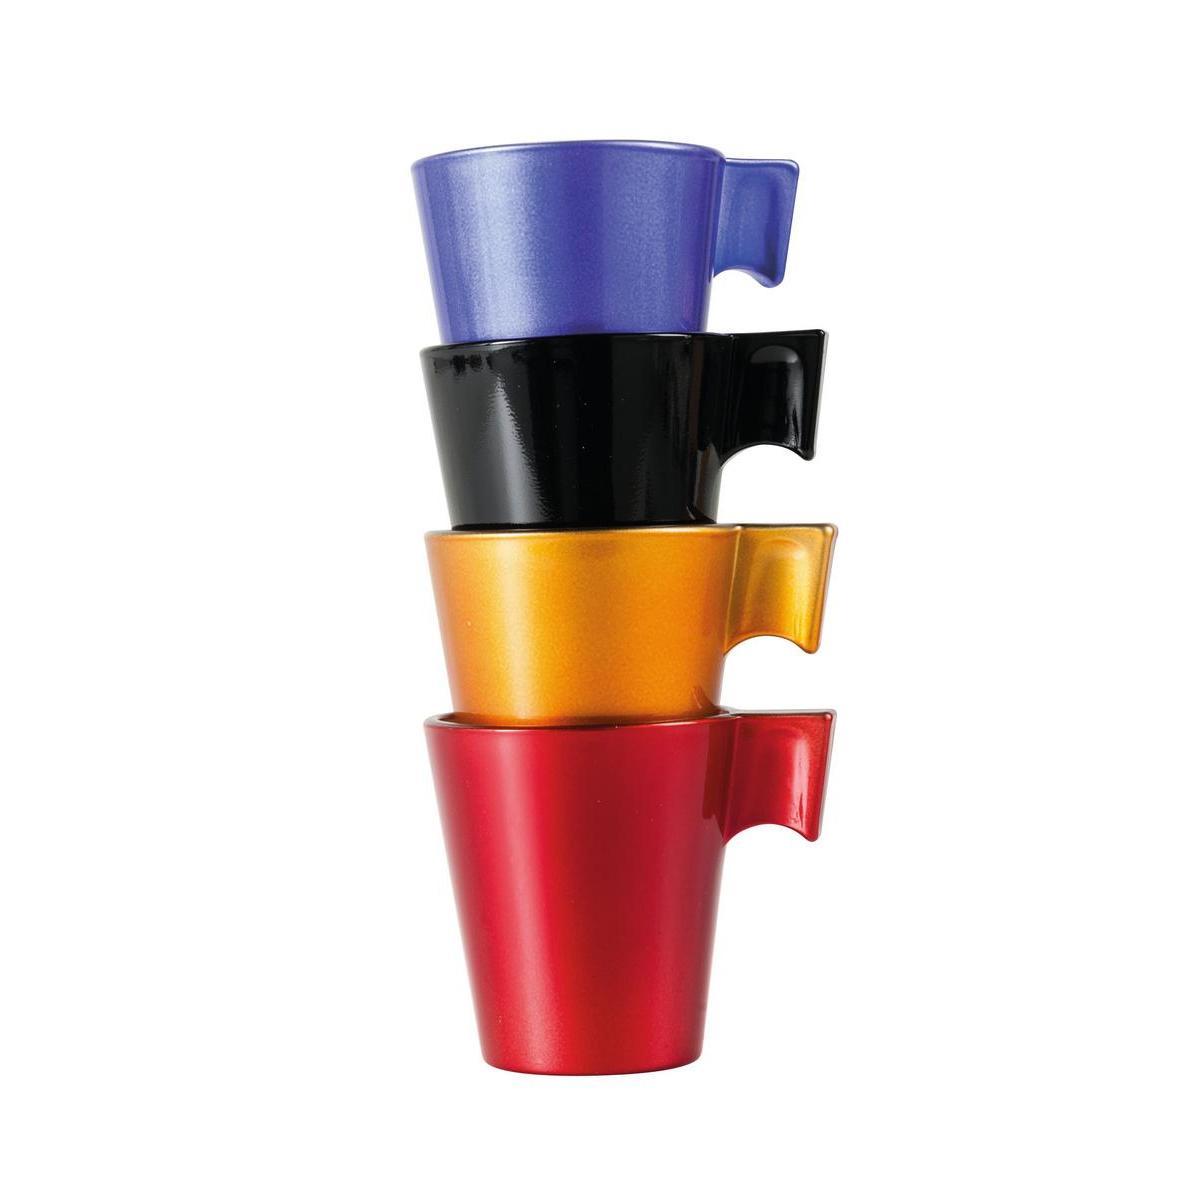 4 tasses pour espresso - Verre - 8 cl - 4 coloris métallisés